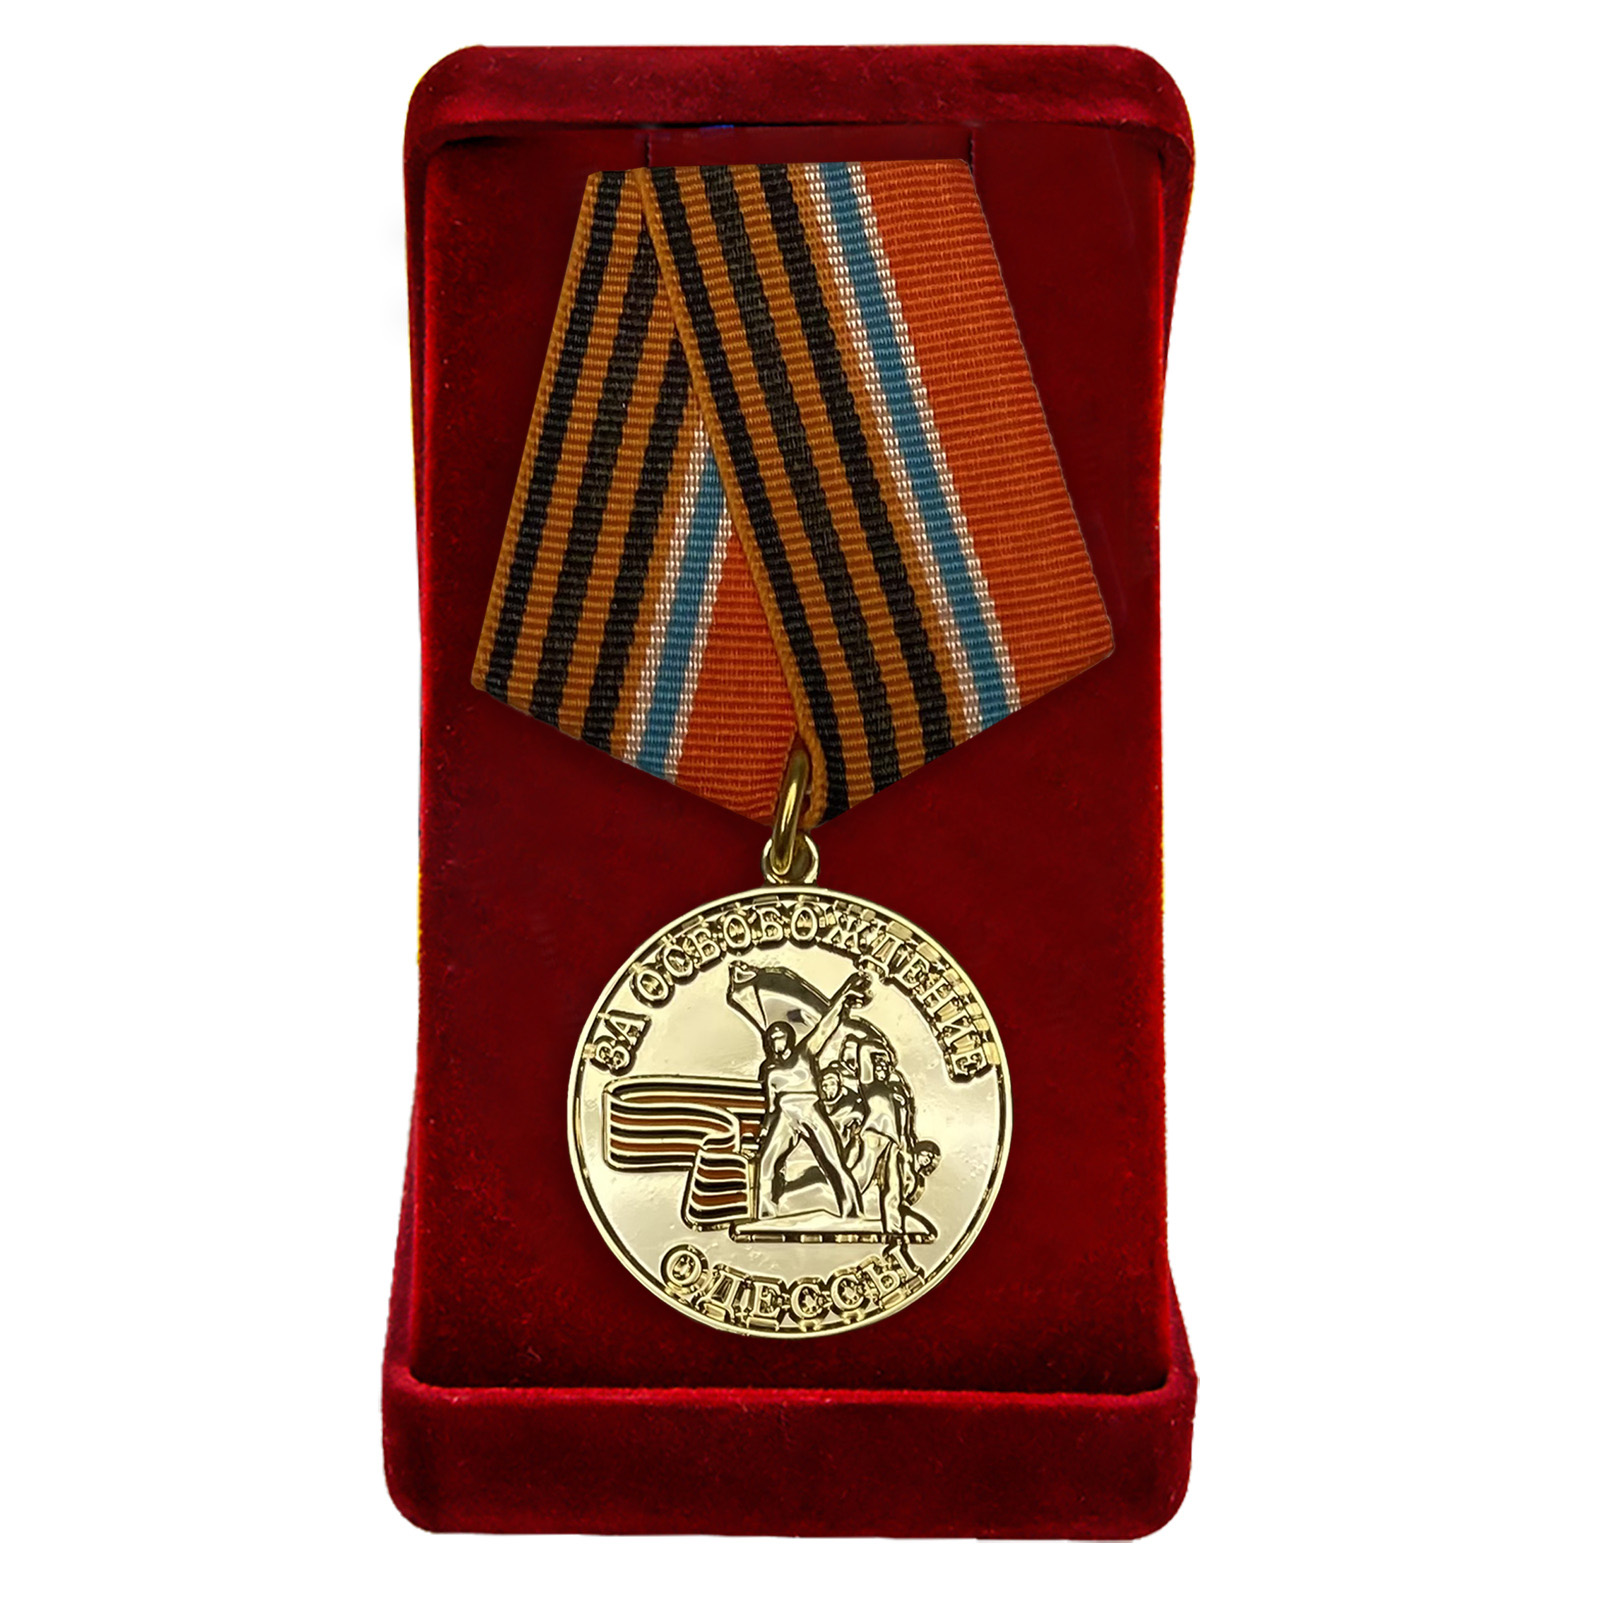 Купить наградную медаль Новороссии "За освобождение Одессы" оптом или в розницу